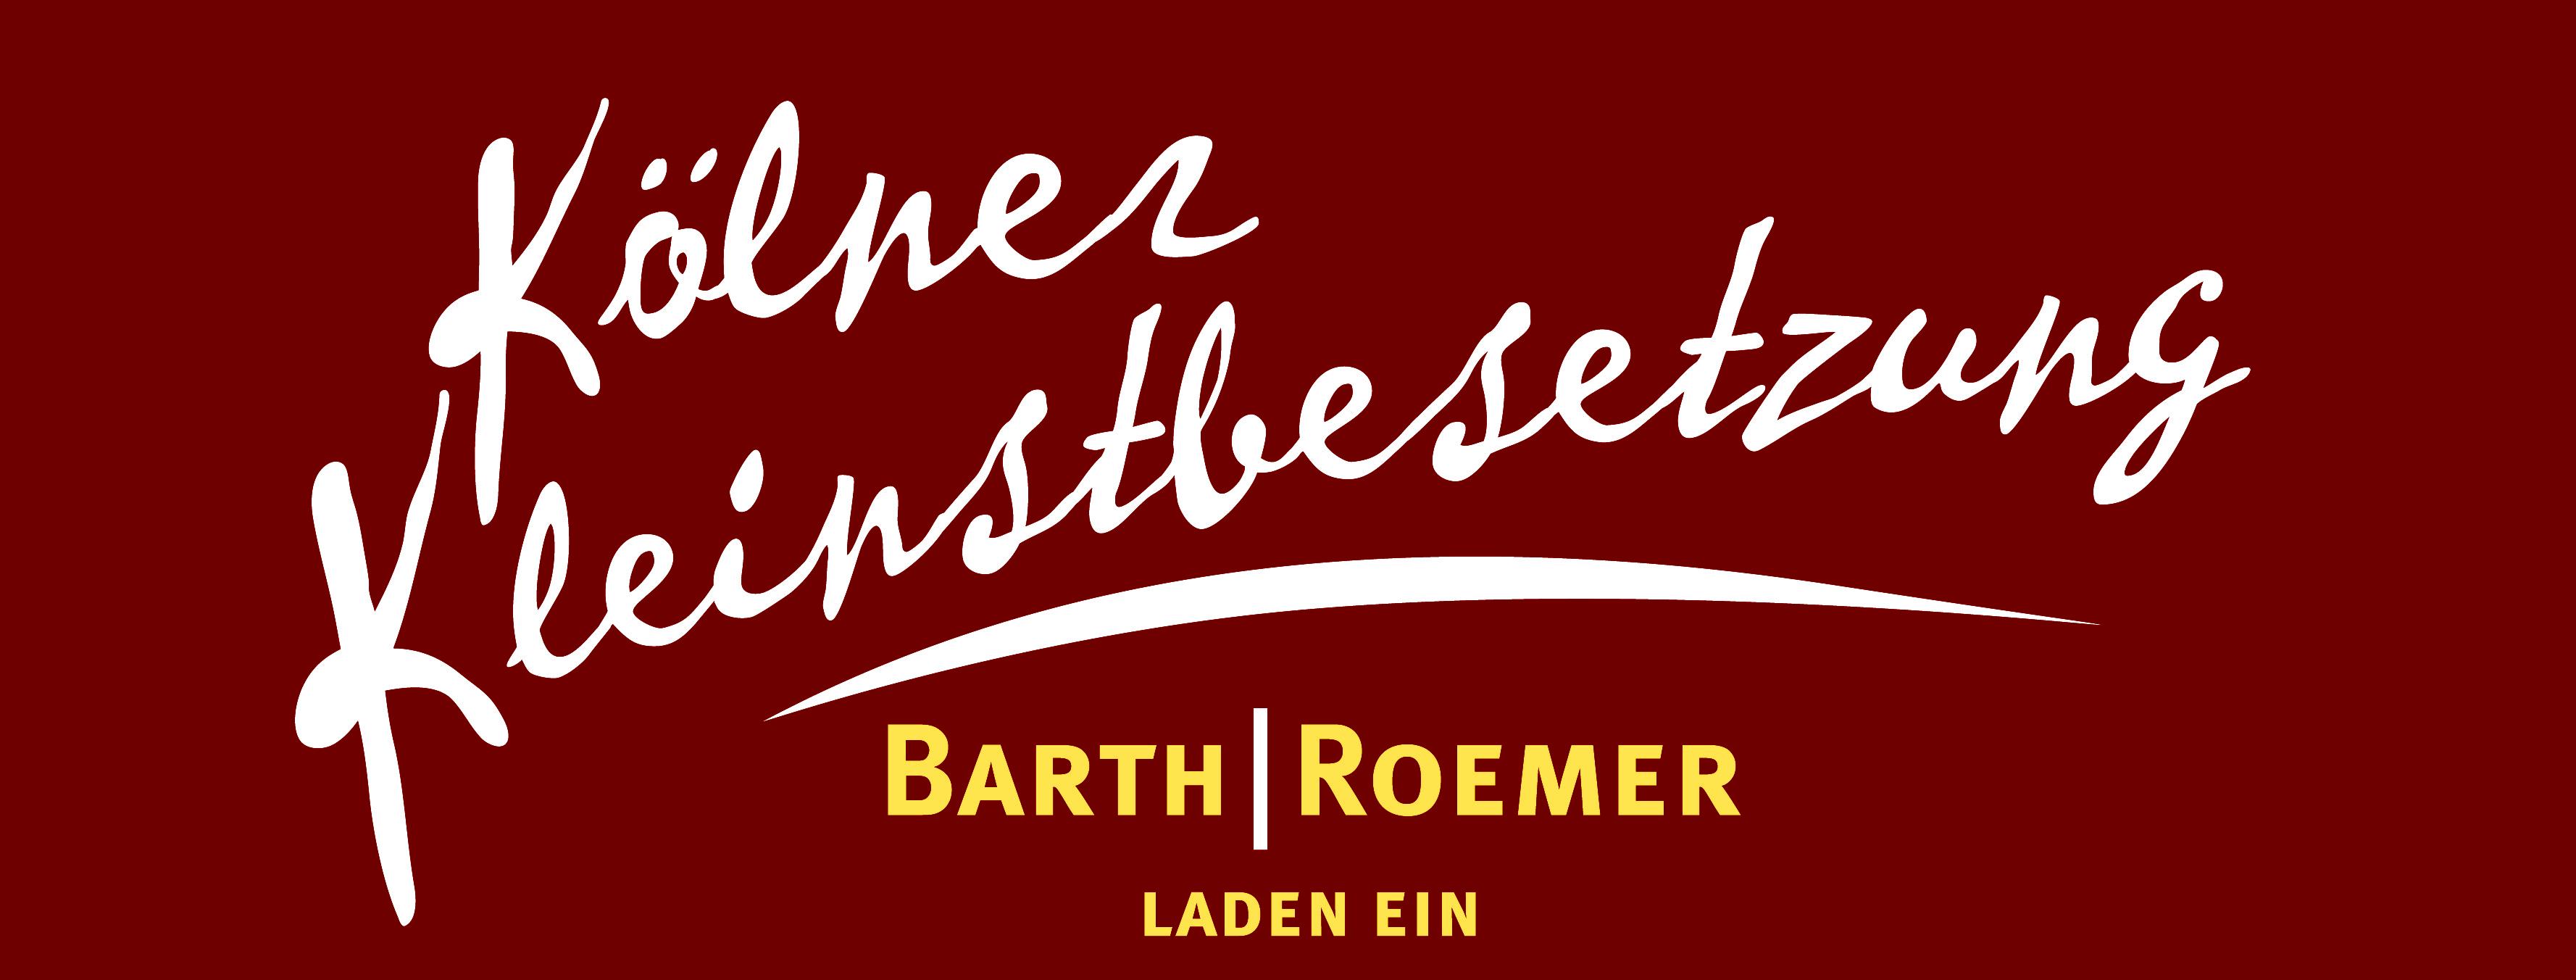 barth roemer